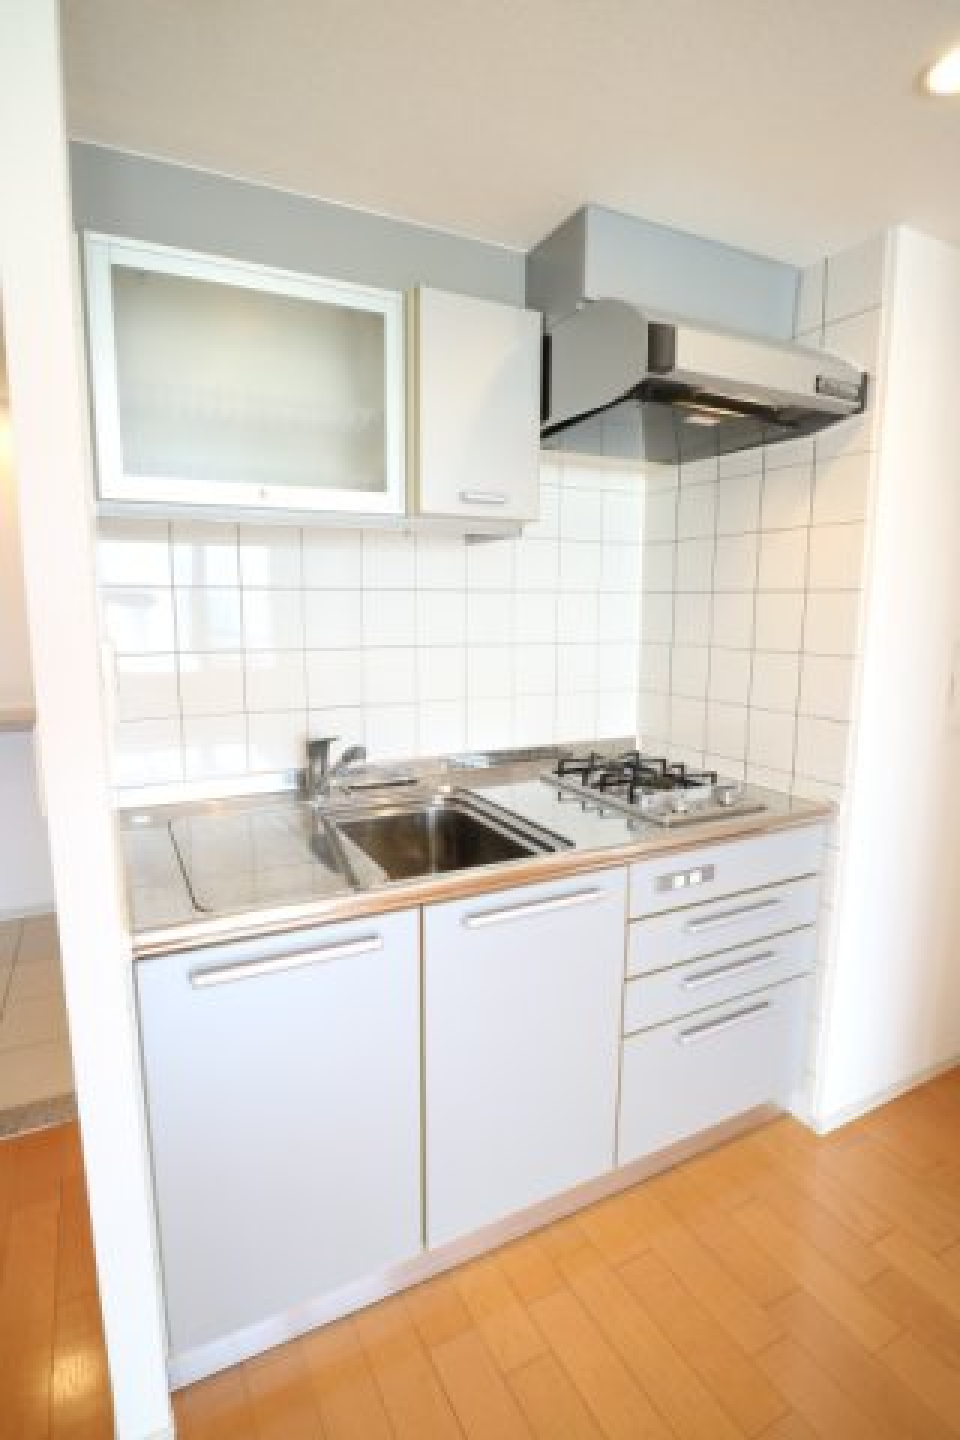 タイル張りのキッチンに、すりガラス調の食器棚もあるのが透け感があっていいですね。※参考写真